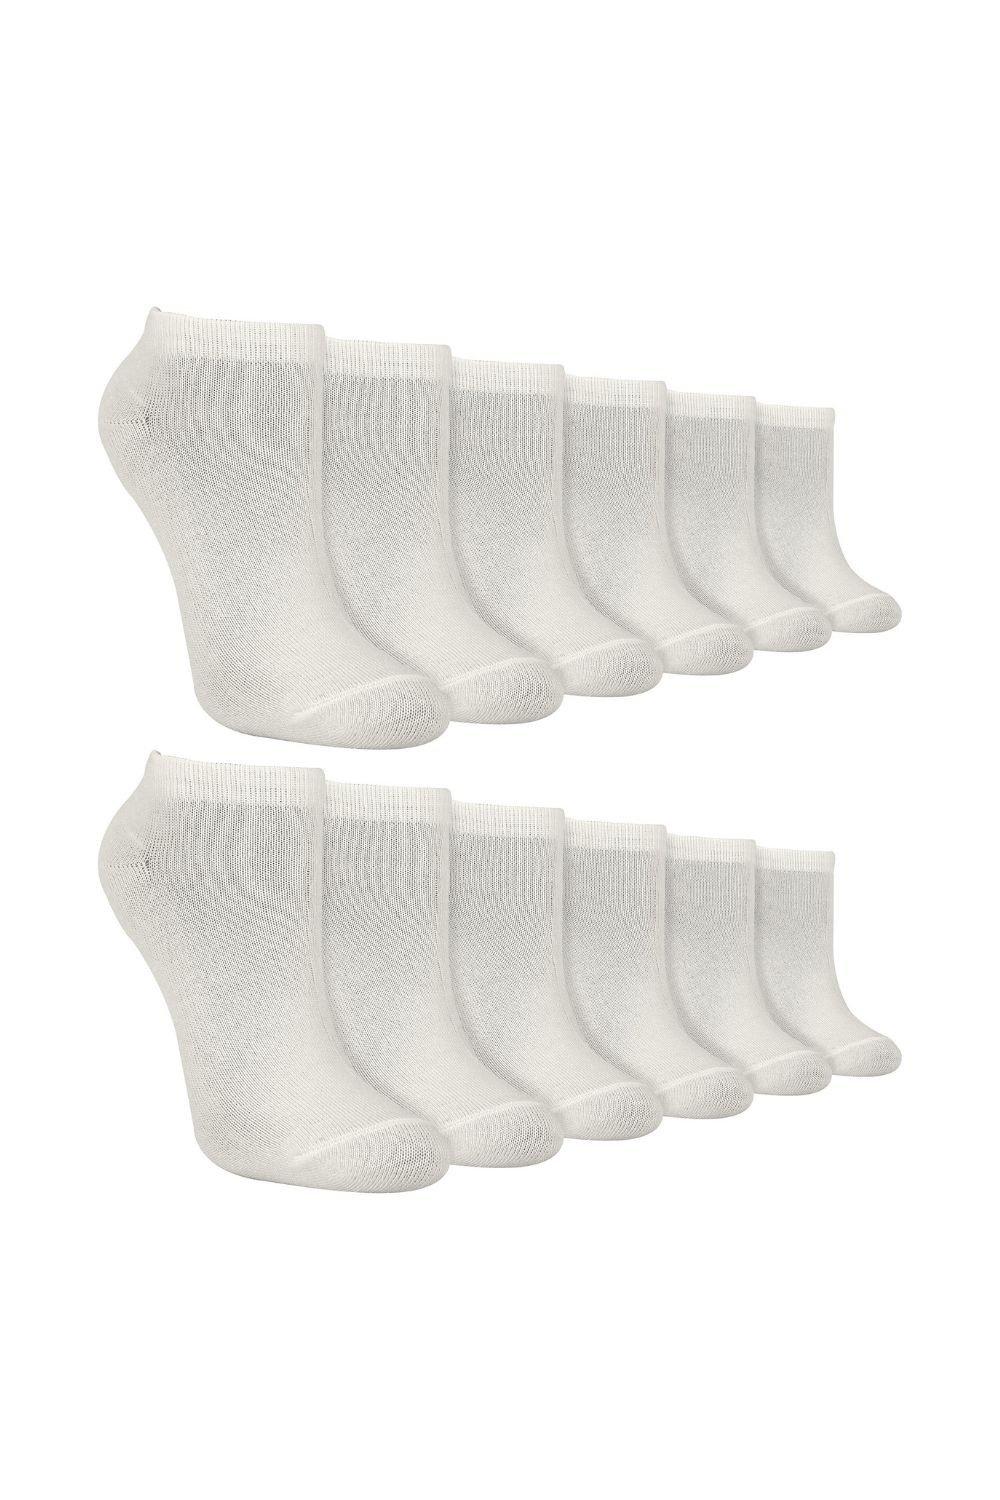 12 Pair Multipack Trainer Socks - Ankle Bamboo Socks